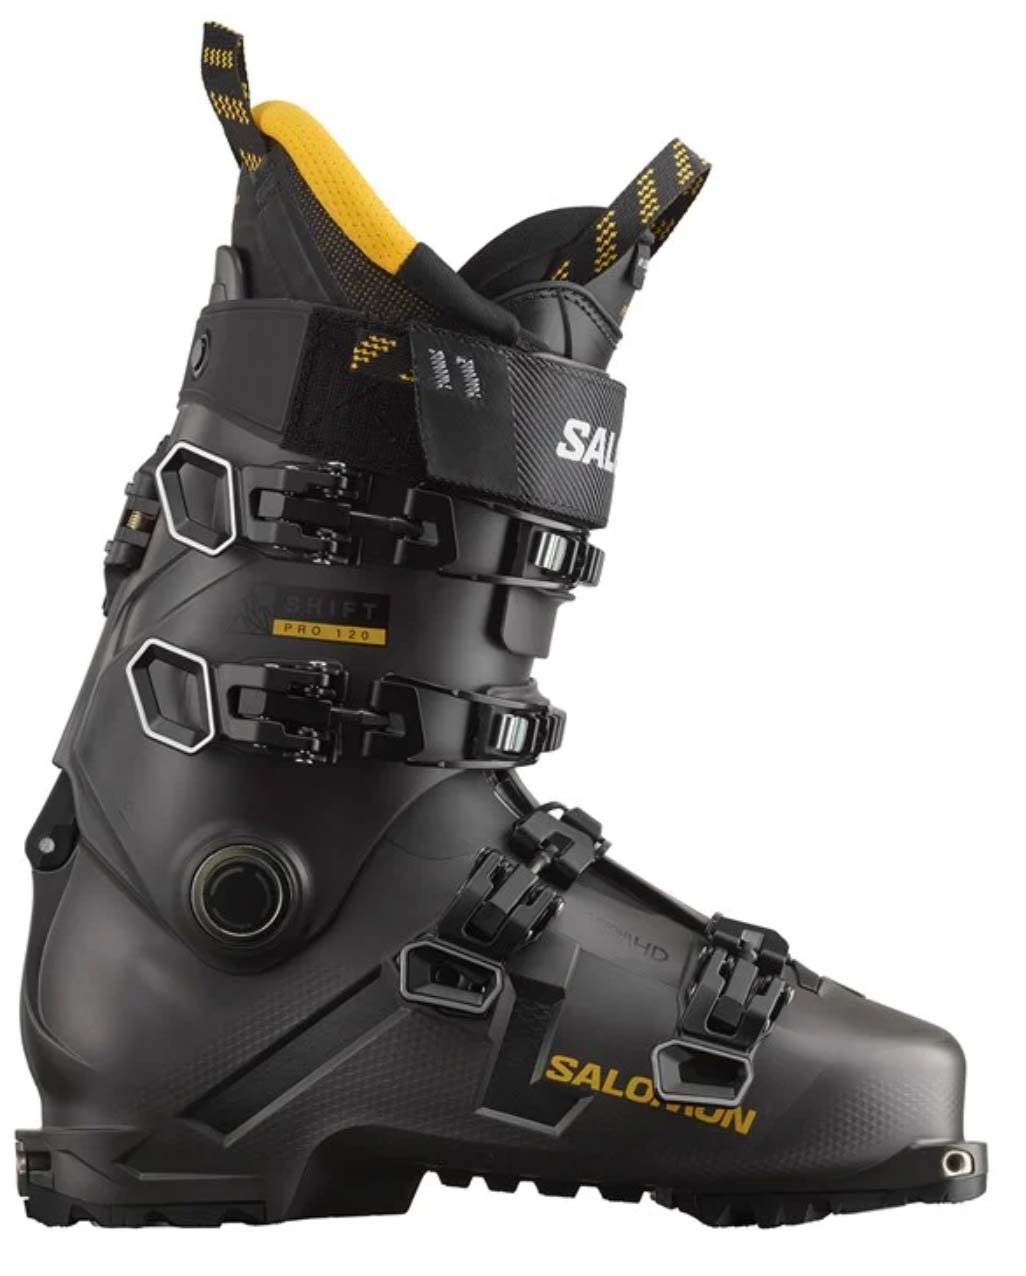 Salomon Shift Pro 120 ski boots